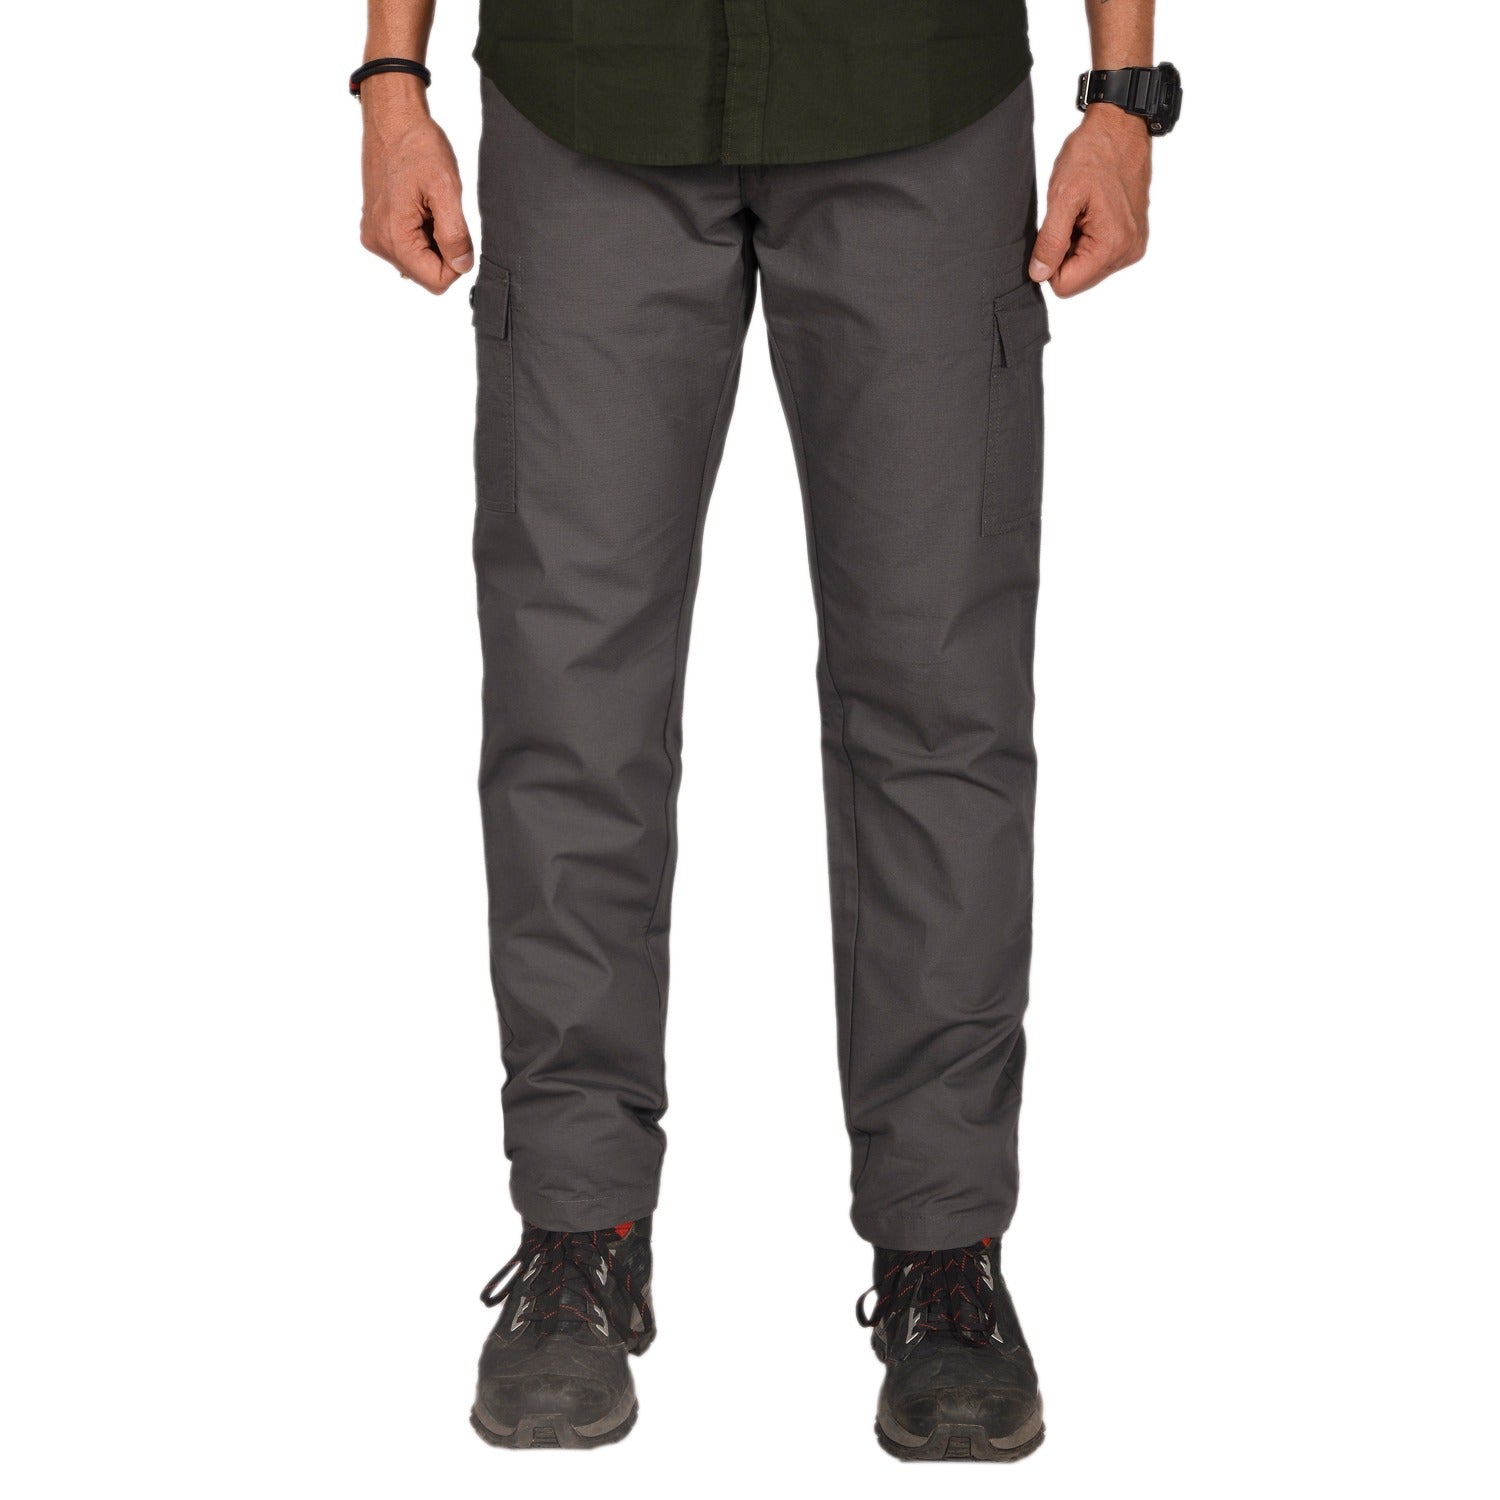 Buy Gokyo Corbett Outdoor Cargo Pants Grey | Trekking & Hiking Pants at Gokyo Outdoor Clothing & Gear